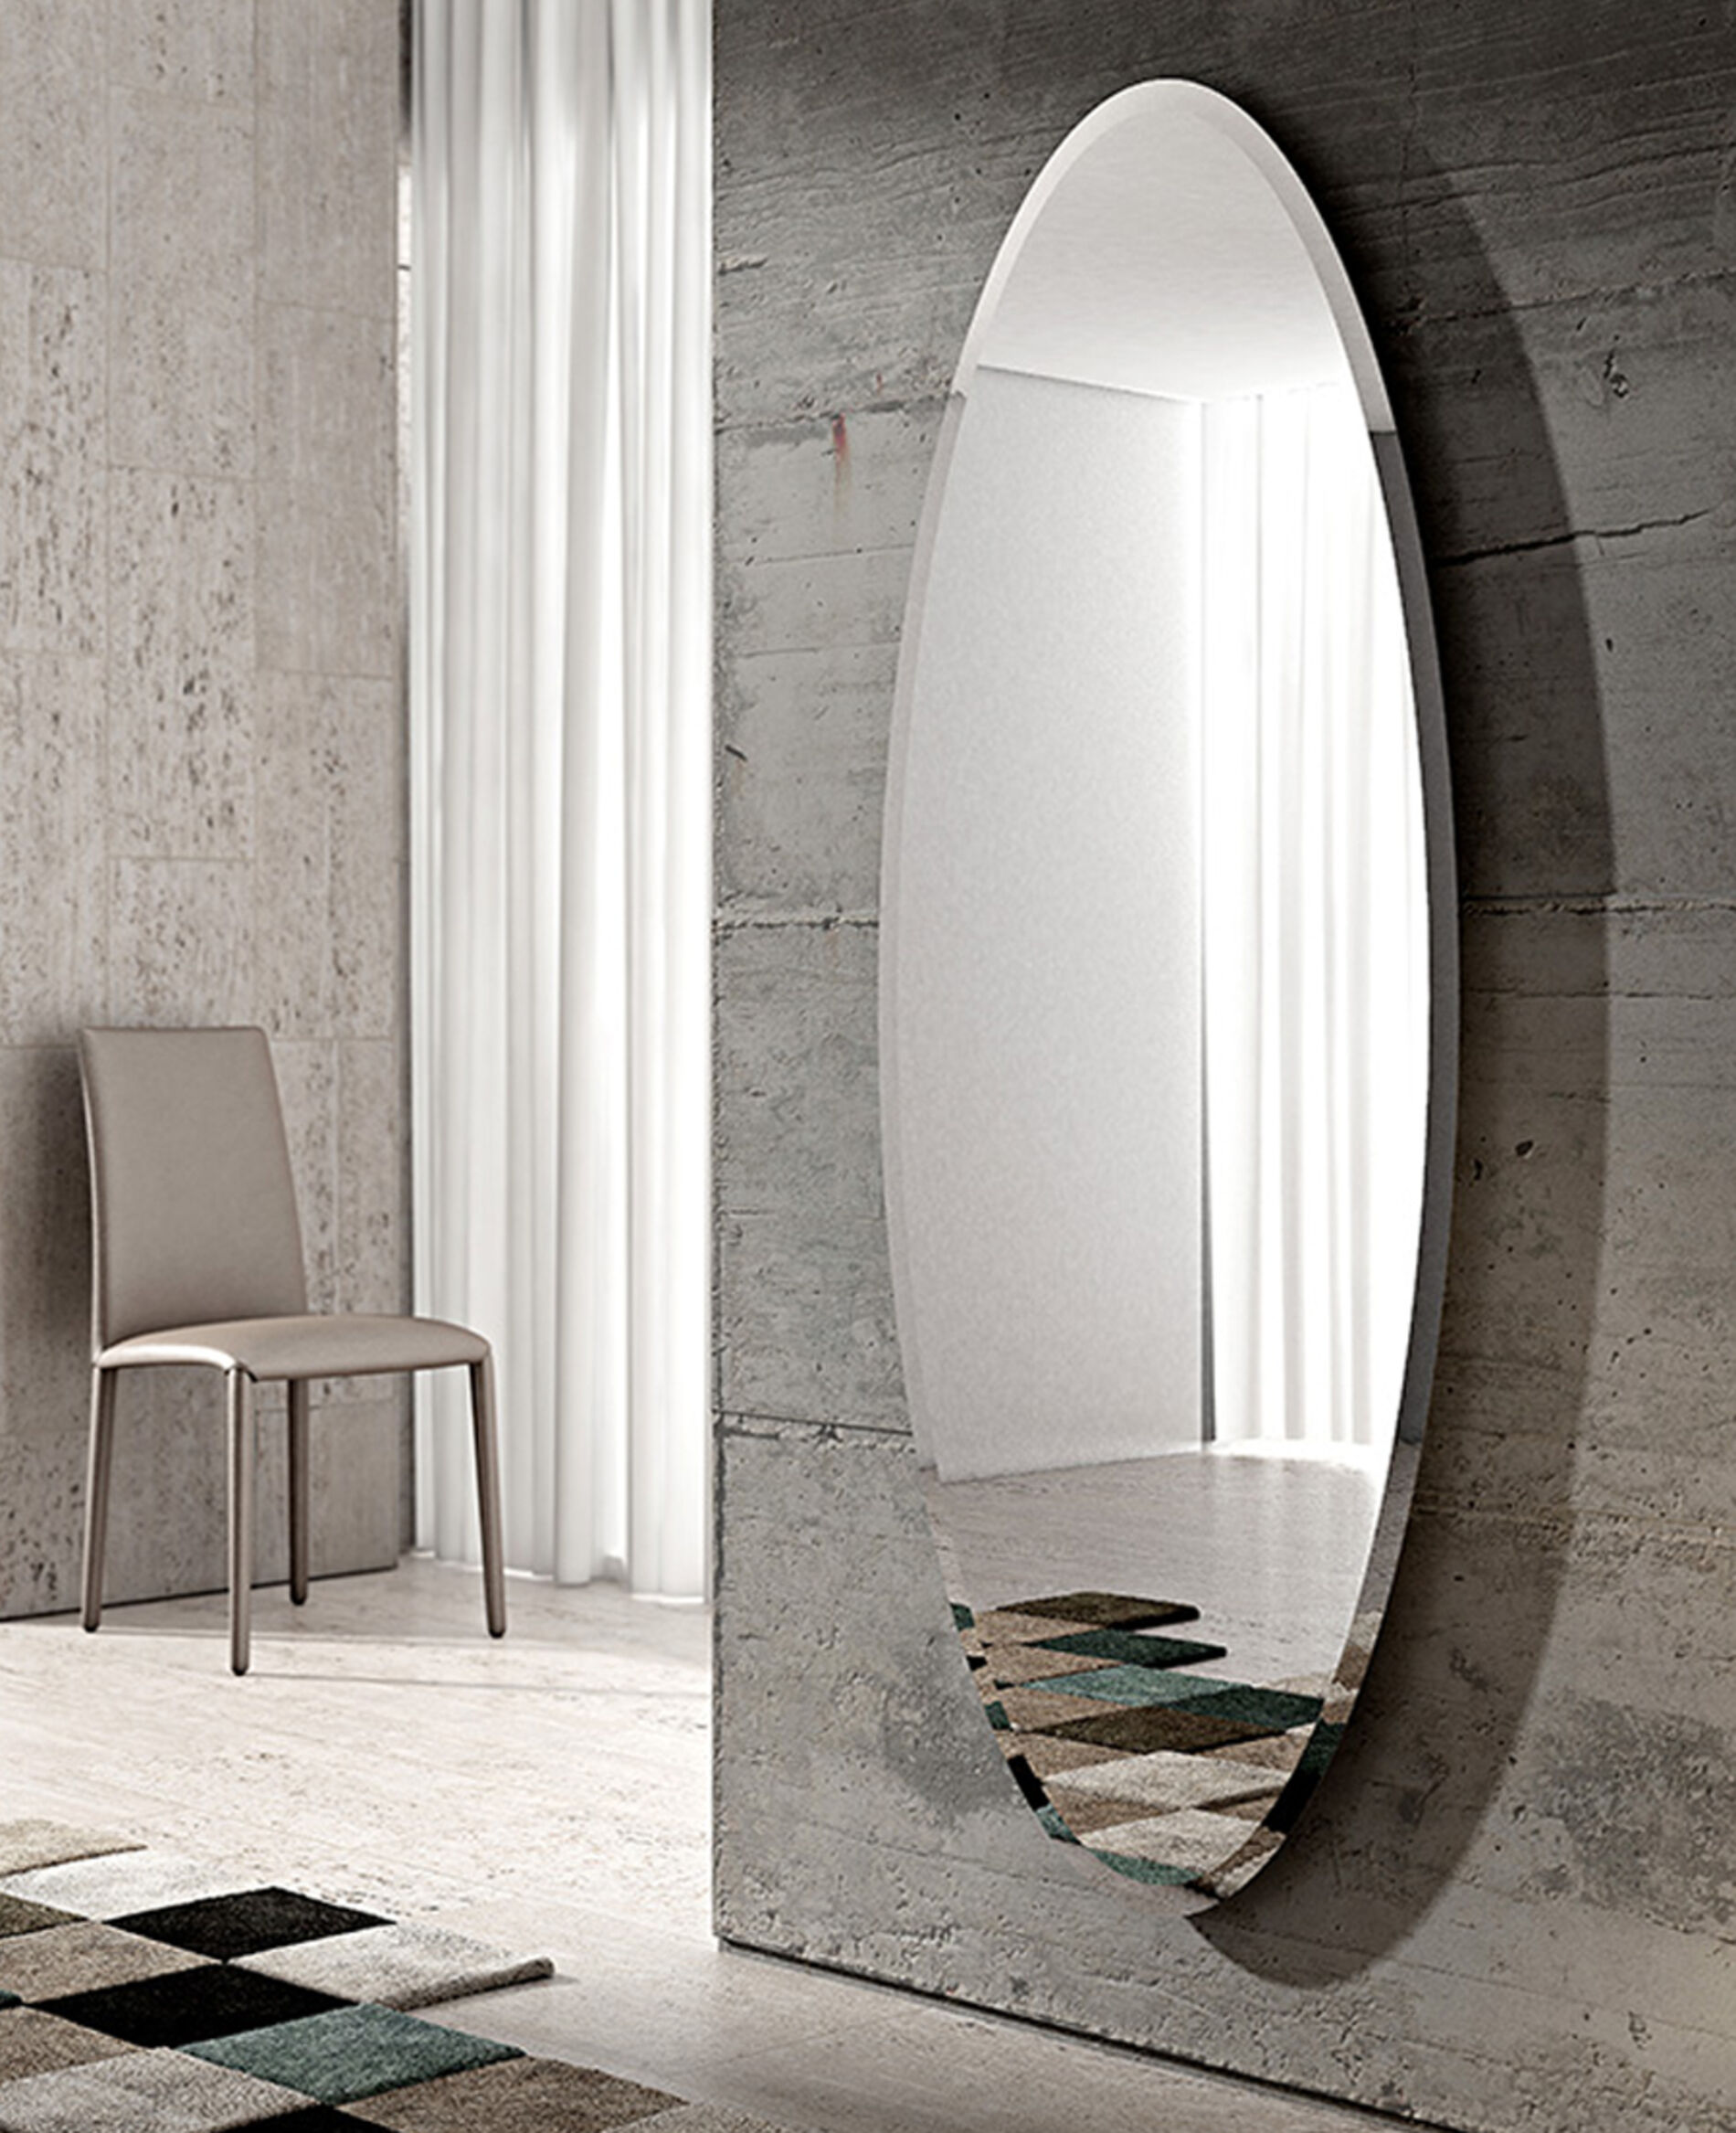 Specchio ovale da parete, bisellato - Specchi Ovali Riflessi